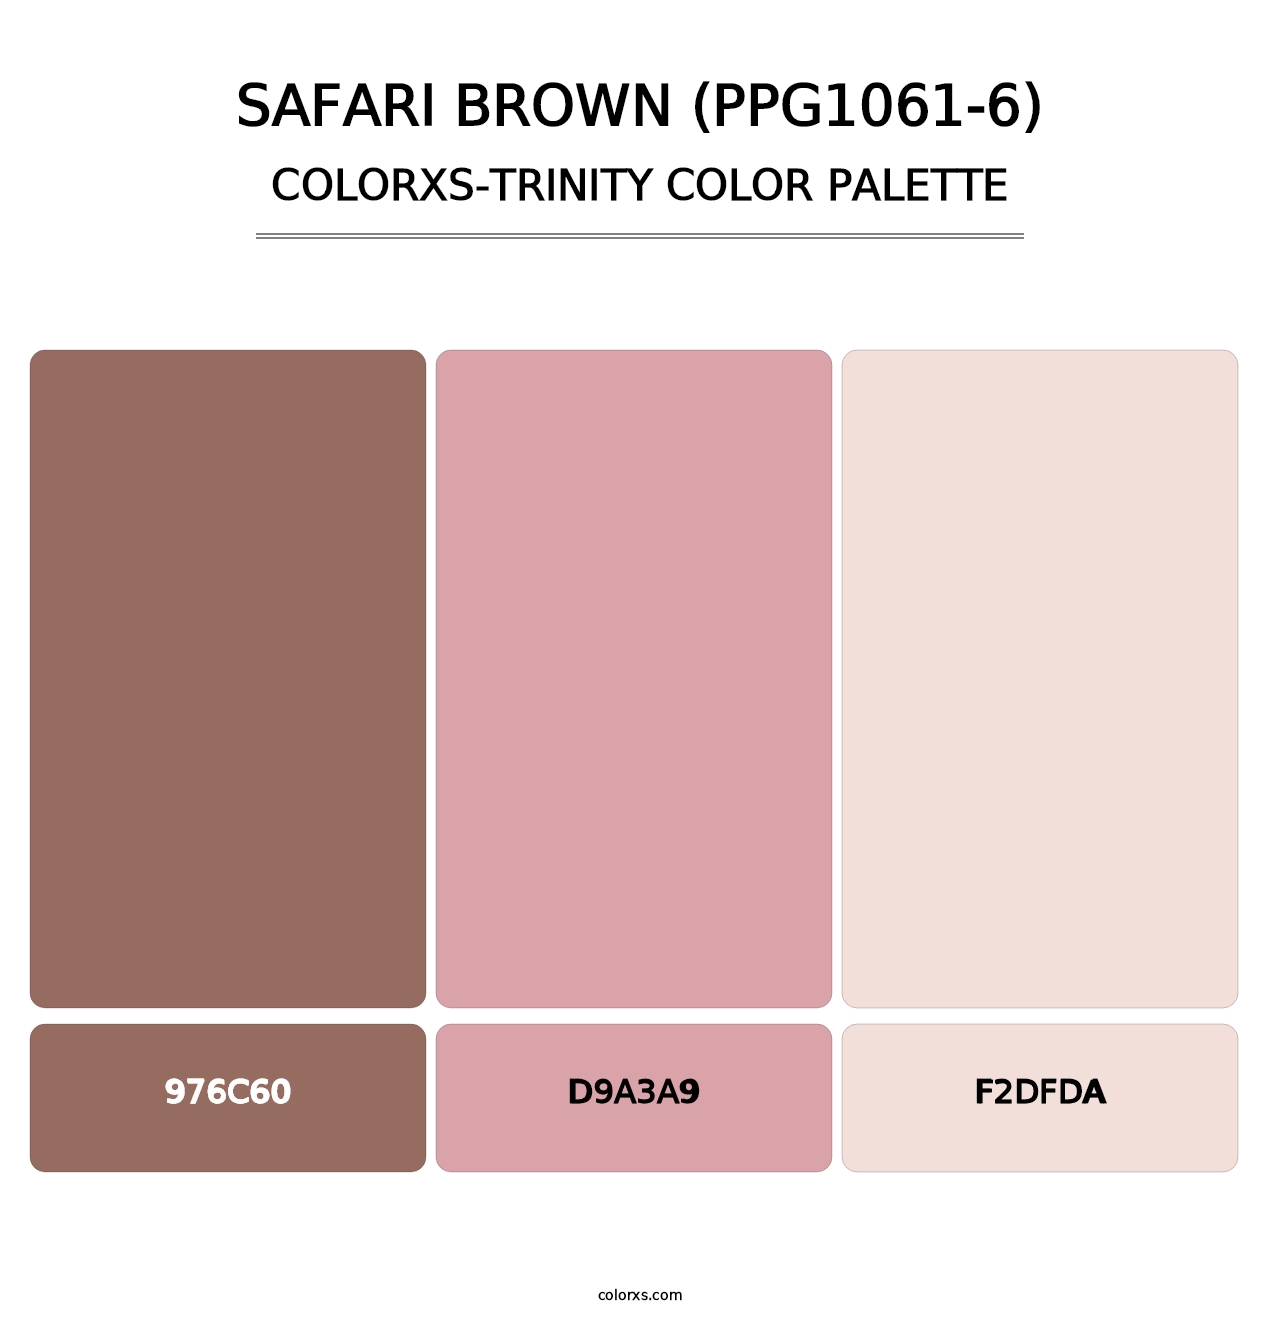 Safari Brown (PPG1061-6) - Colorxs Trinity Palette